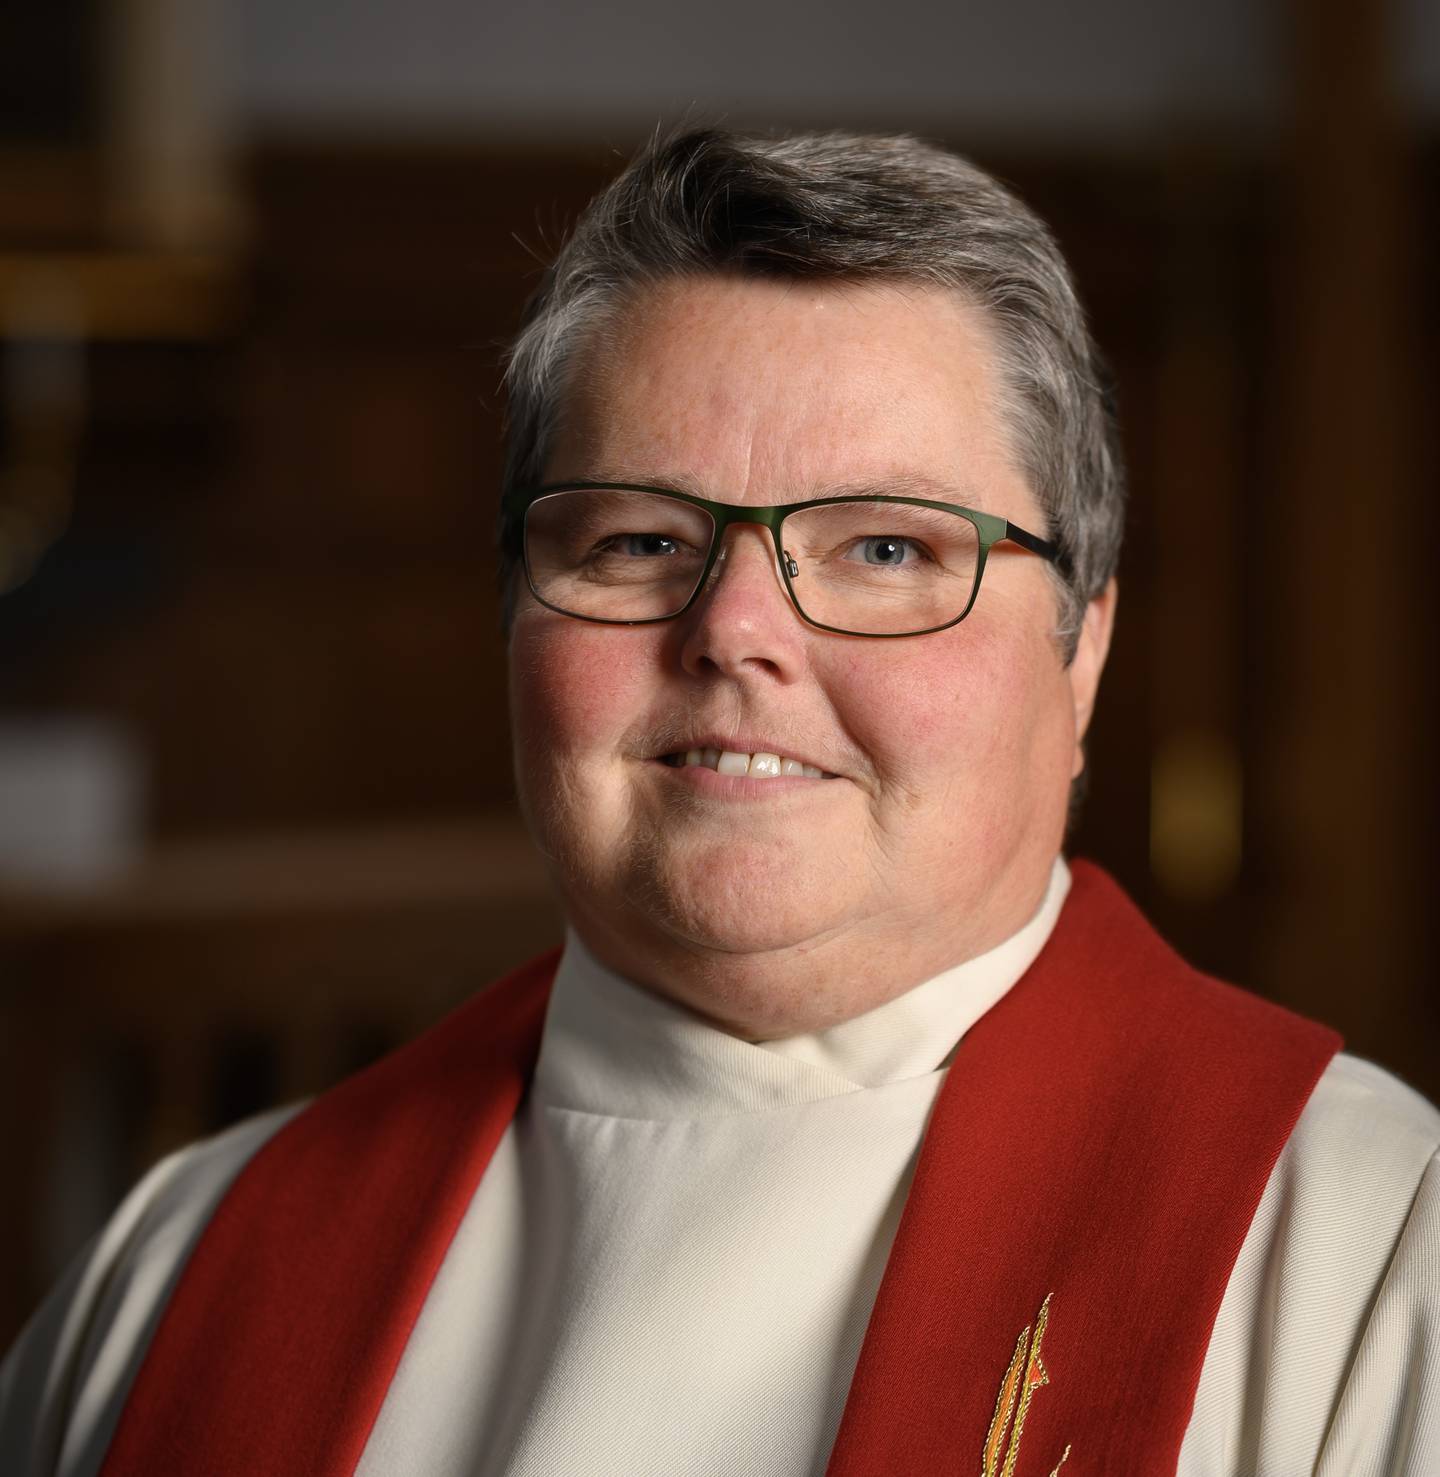 Kristine Sandmæl er prost i Lofoten prosti, leder av Mellomkirkelig råd og kandidat til stillingen som ny biskop i Borg bispedømme.